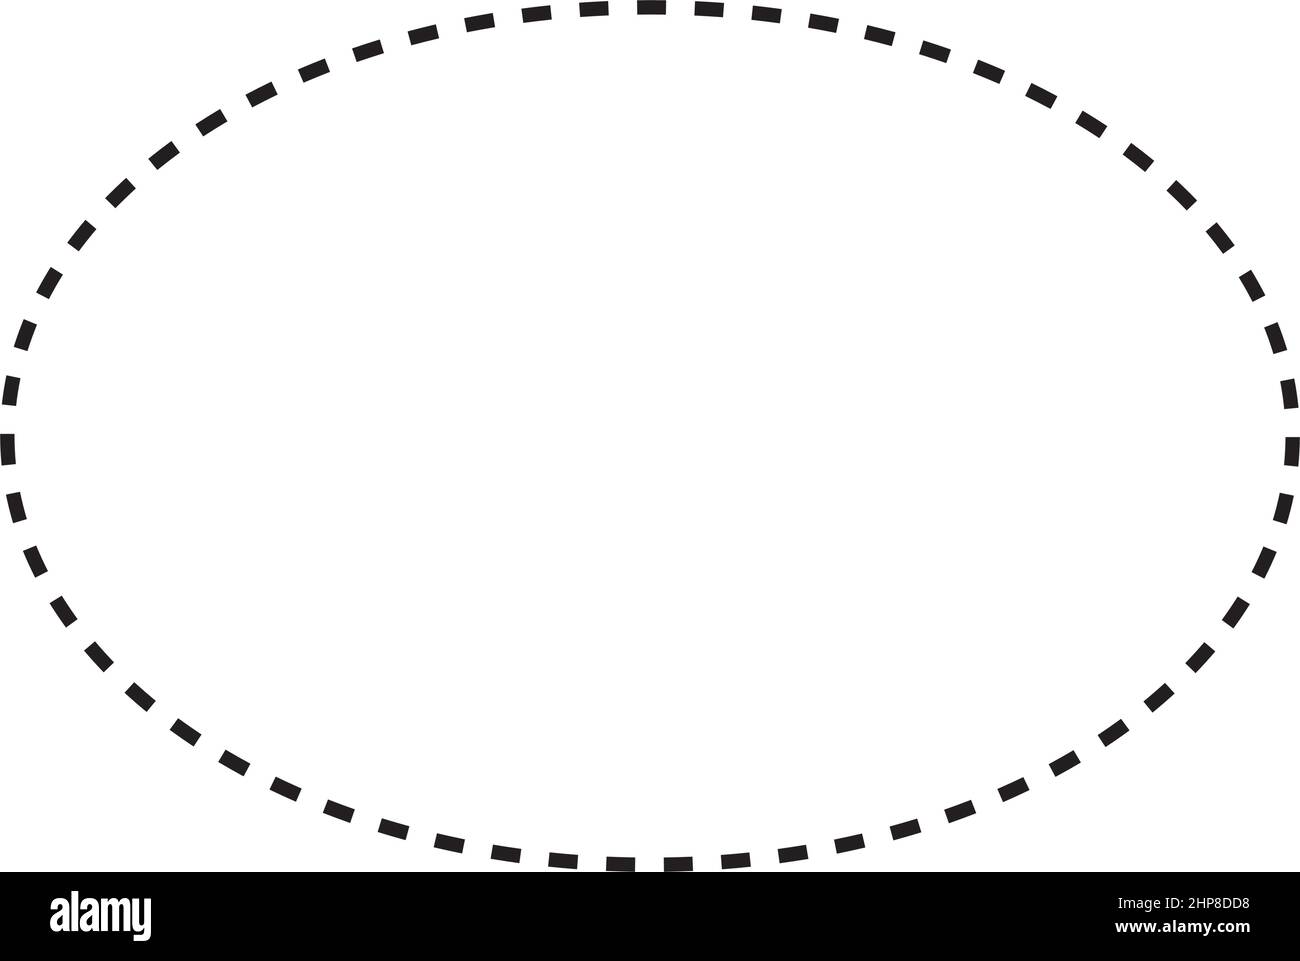 Ellipse Symbol gestrichelte Form Vektor-Symbol für kreatives Grafikdesign ui-Element in einer Piktogramm-Illustration Stock Vektor